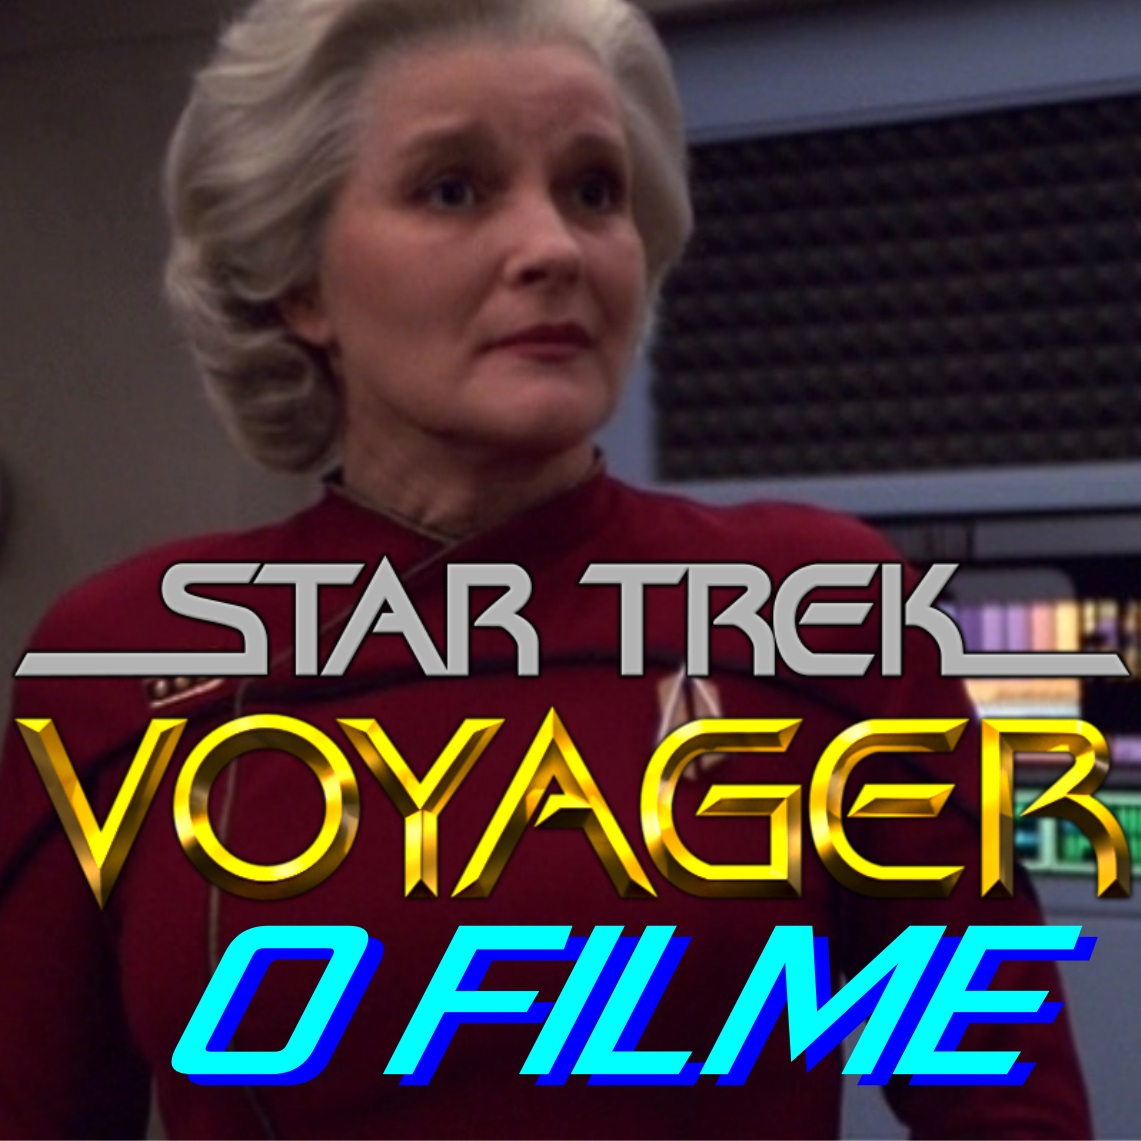 Filme de Star Trek Voyager! O que existe de verdade?